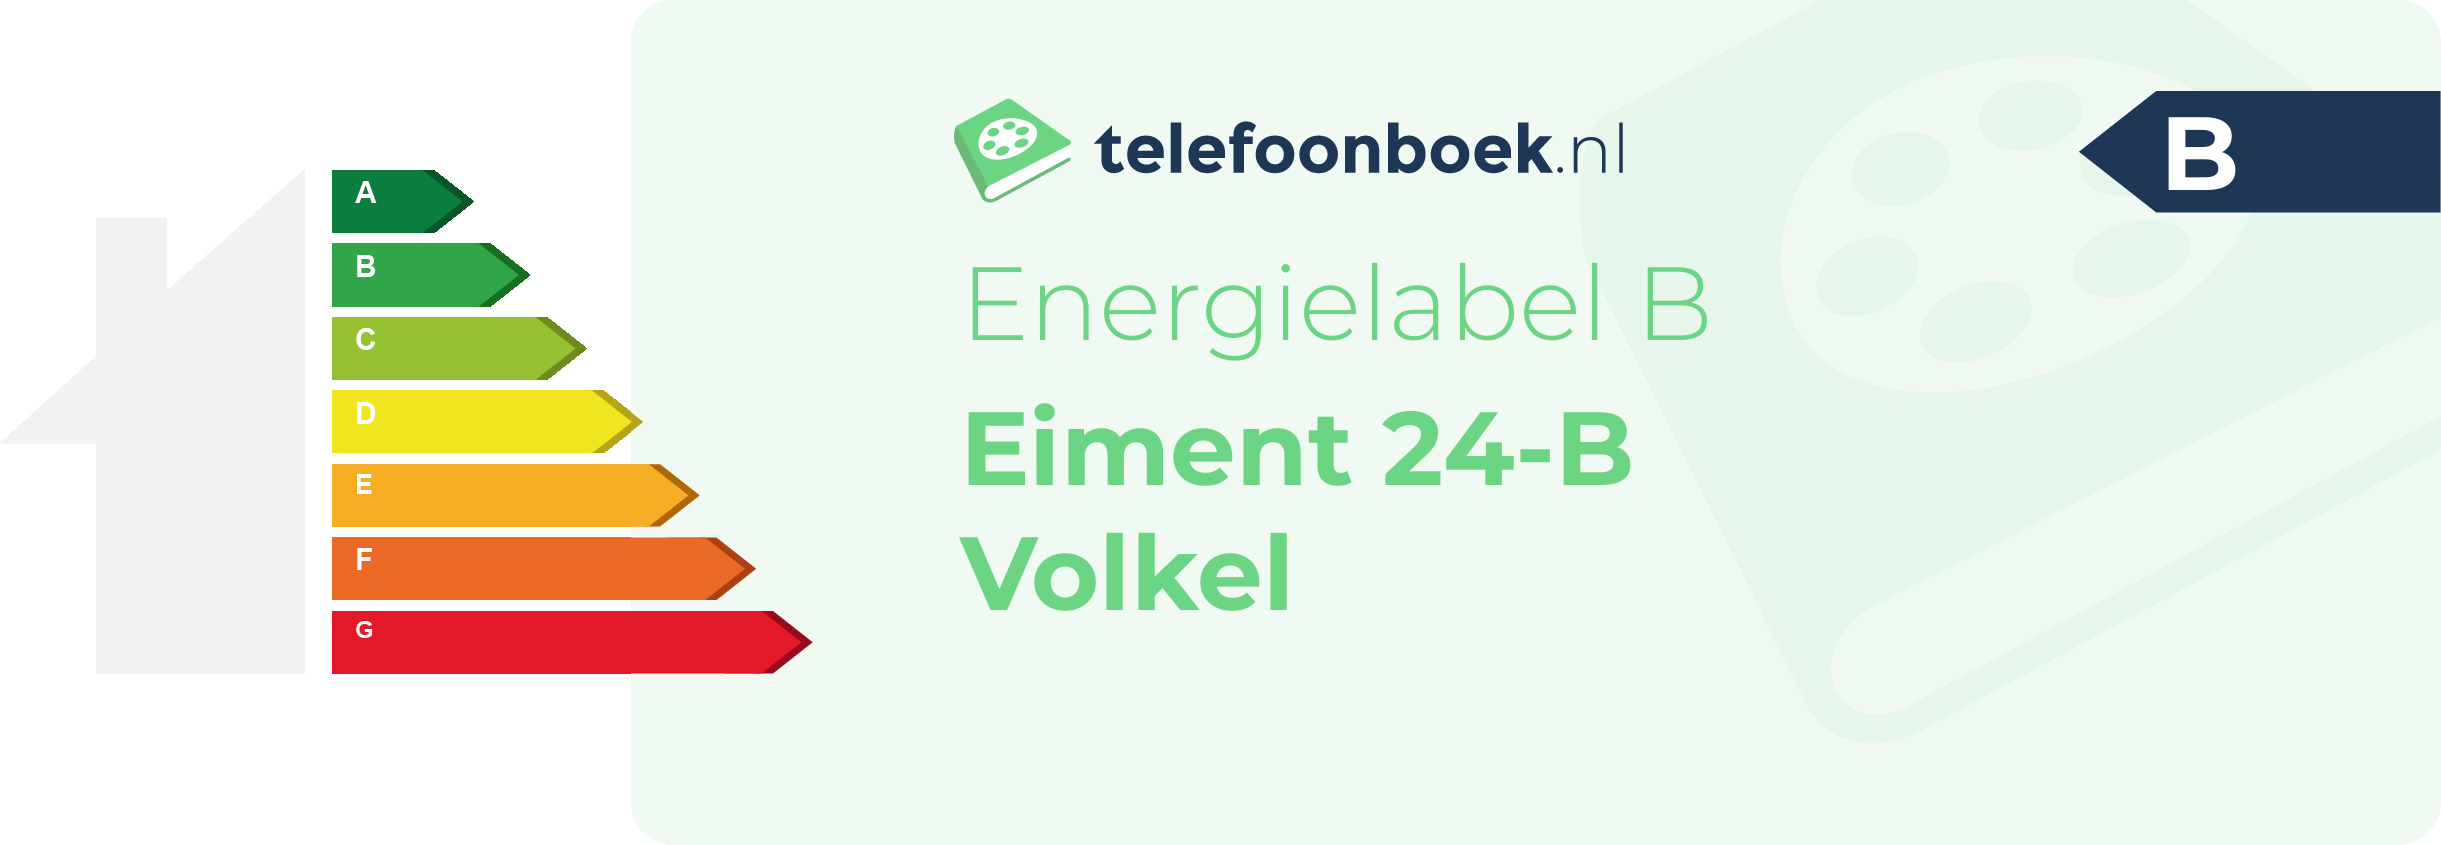 Energielabel Eiment 24-B Volkel